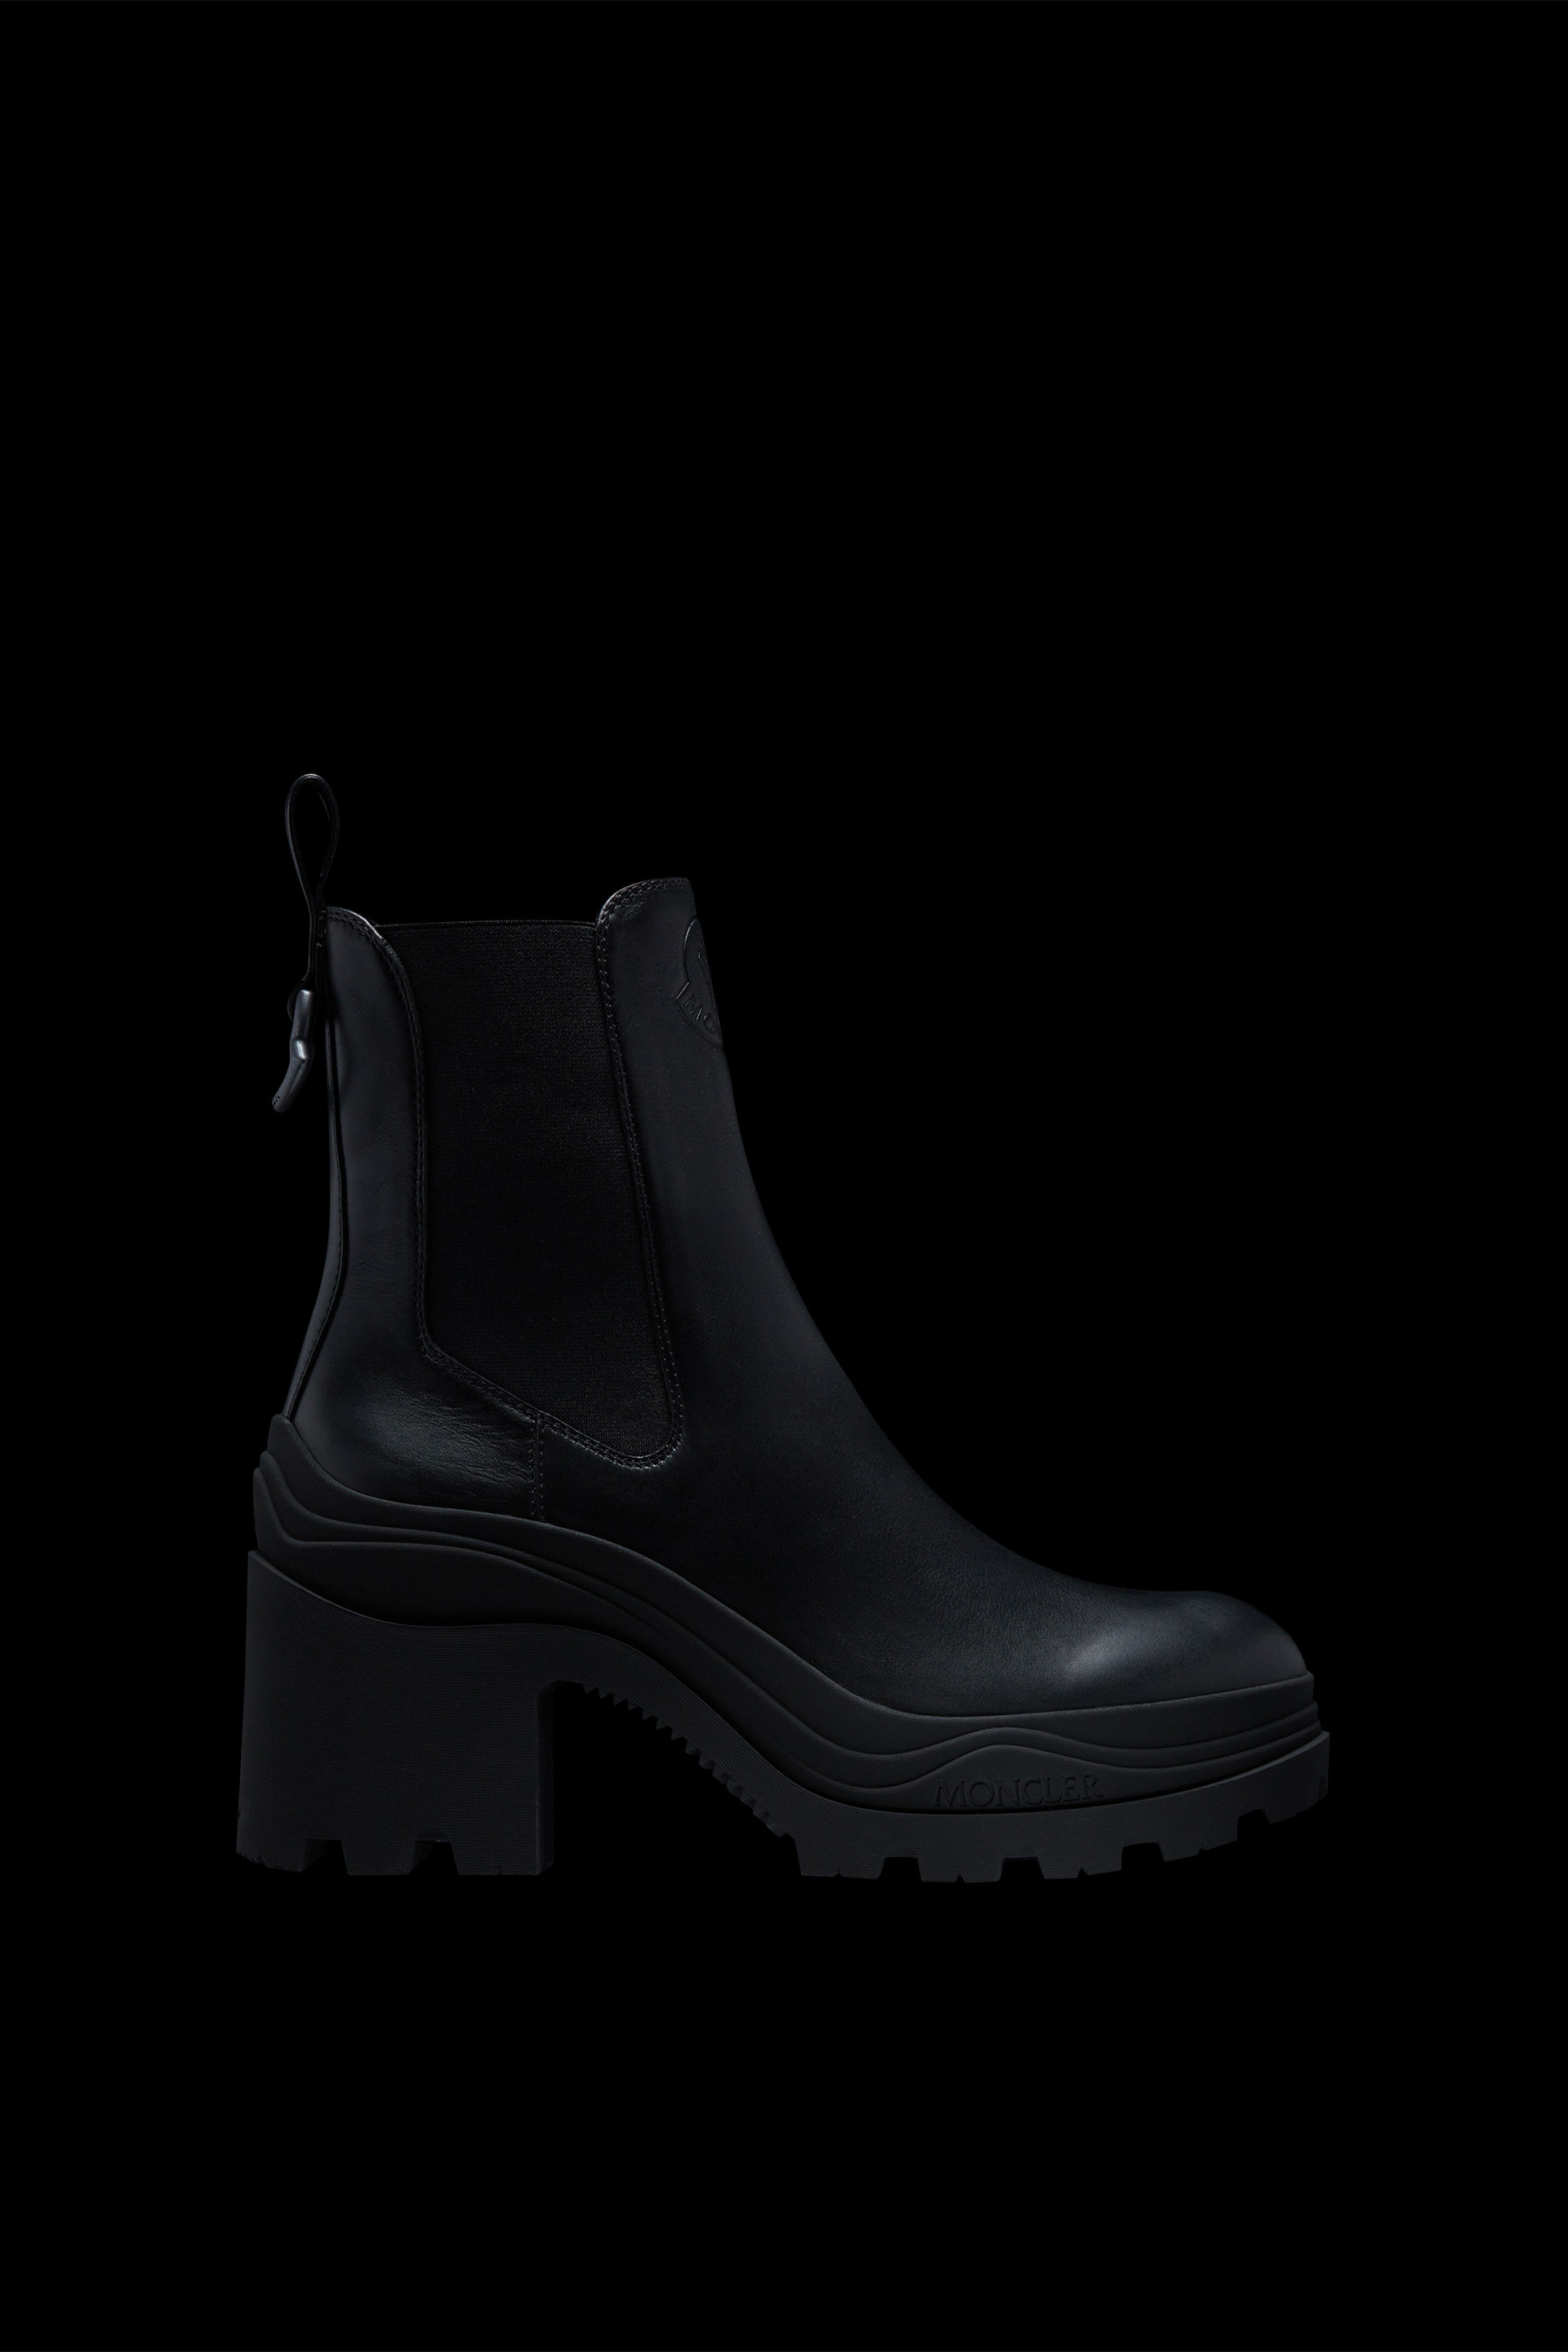 Black Envile Chelsea Boots - Boots for Women | Moncler US